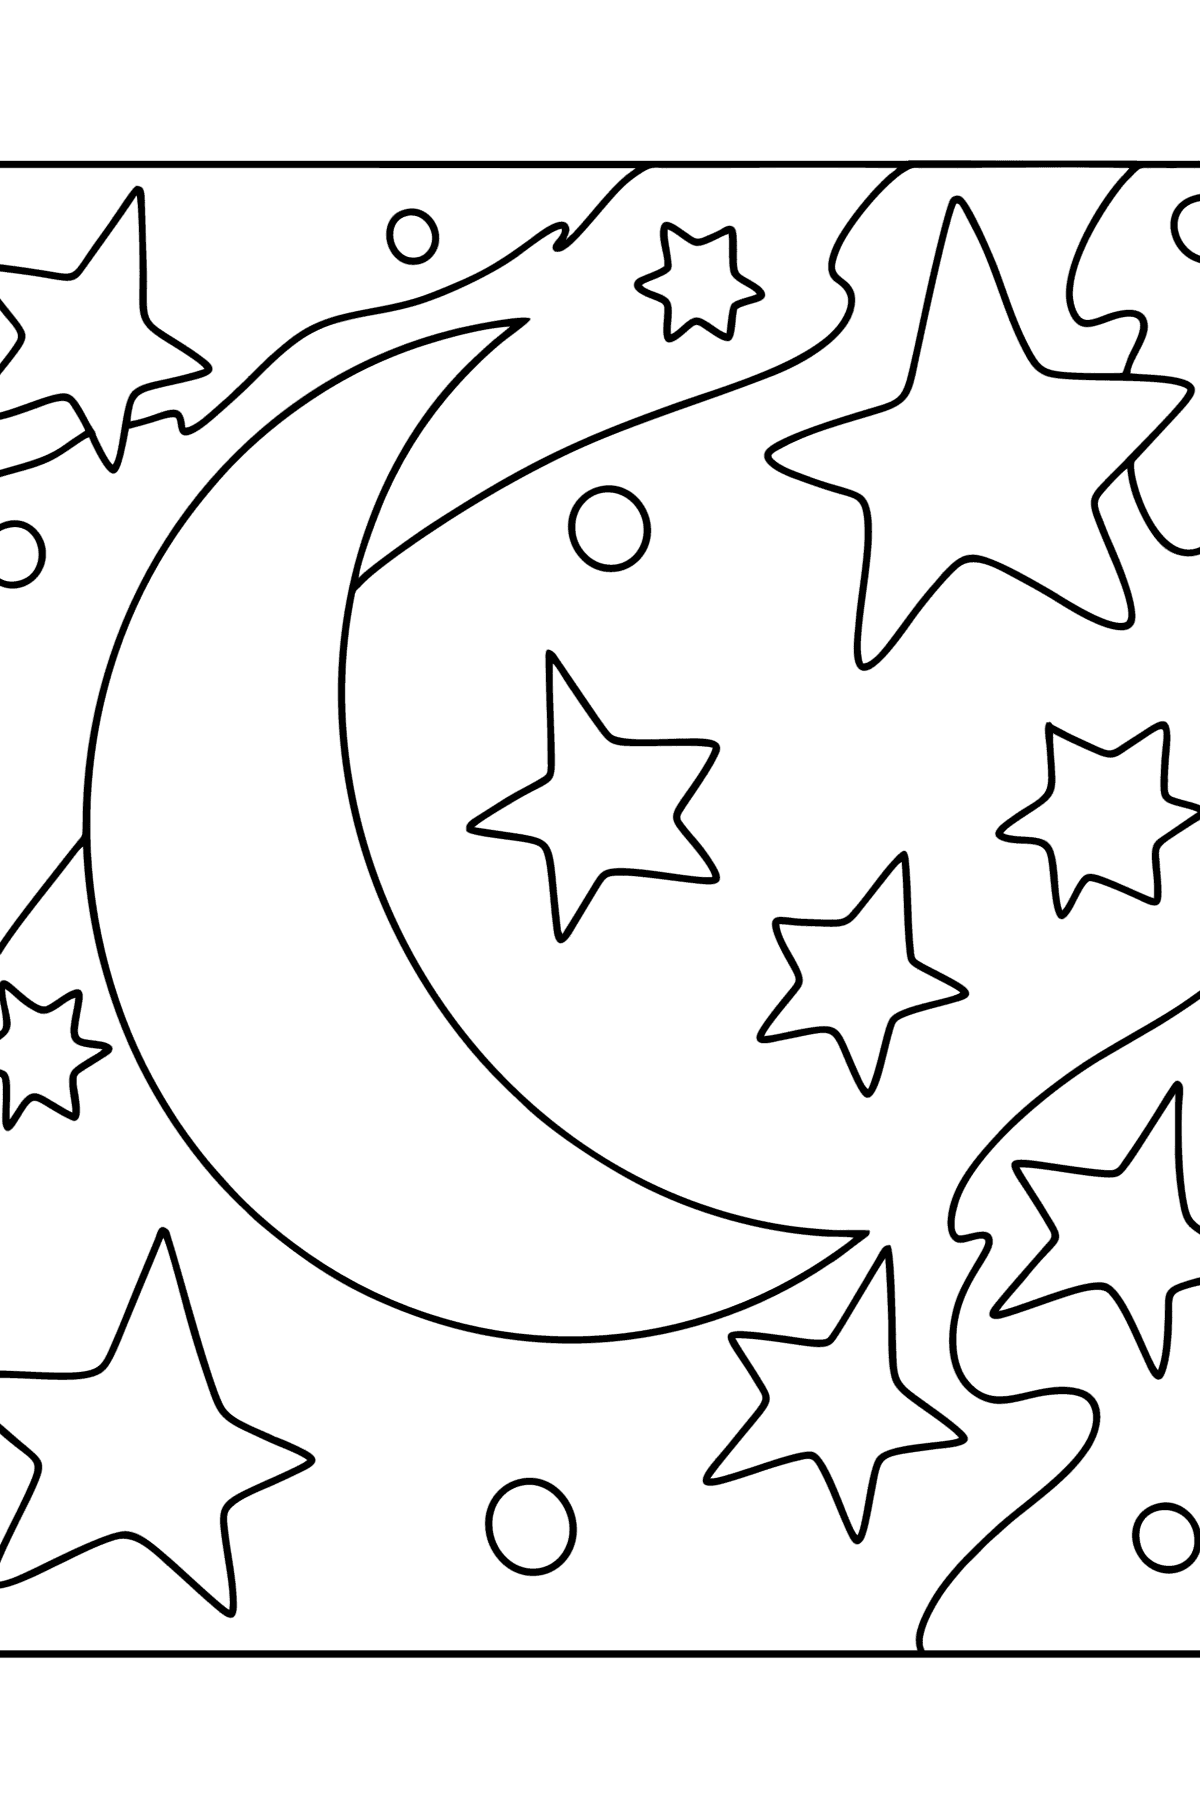 Dibujo para colorear luna y estrellas - Dibujos para Colorear para Niños